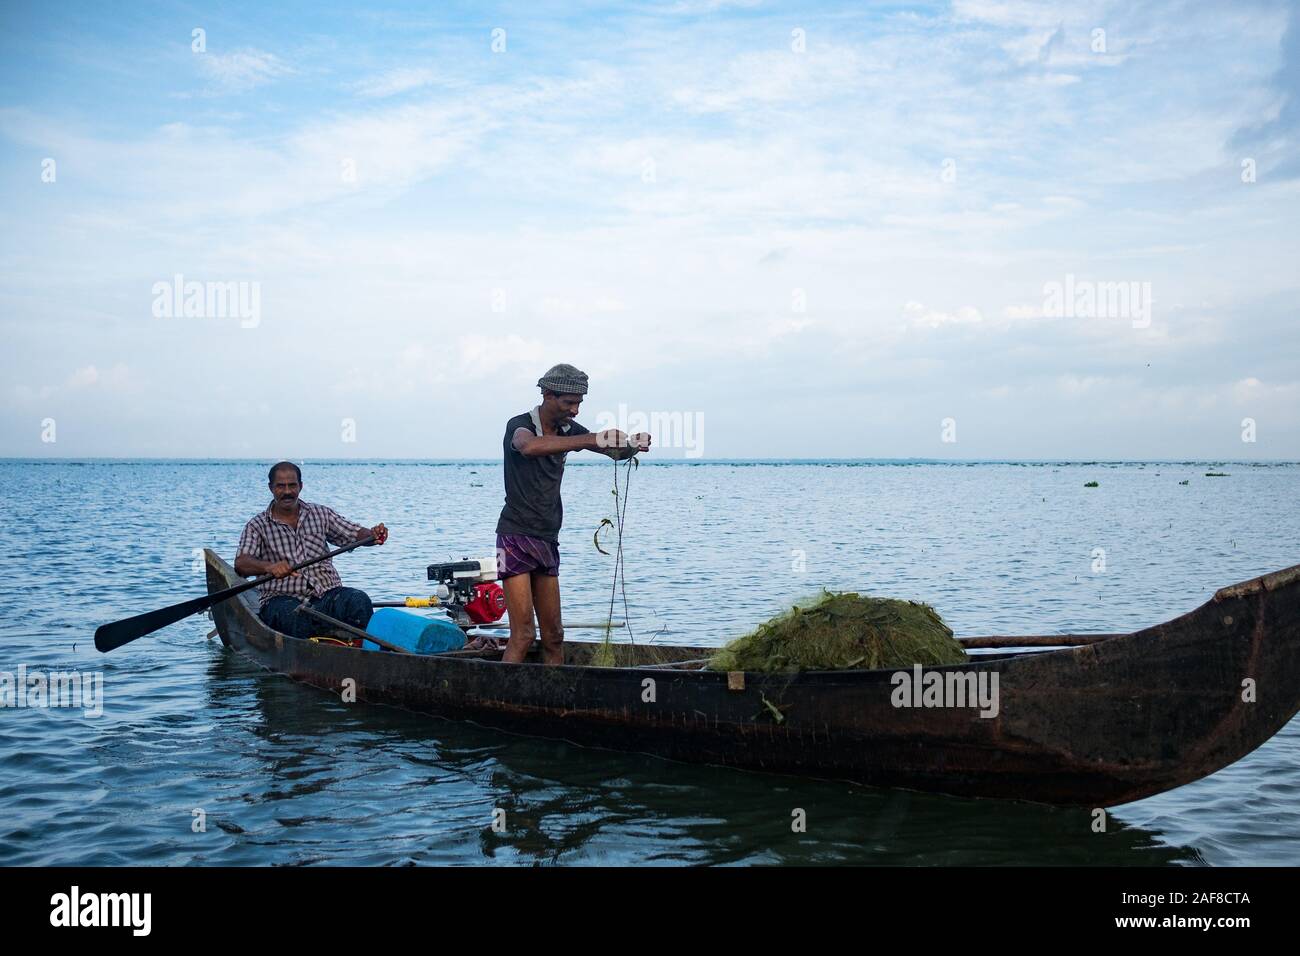 Vembanad See, Kerala - 20. Oktober 2019: portrait eines indischen Fischer auf einem Boot Fischfang mit Netzen, ein Symbol für die indische Wirtschaft und Nahrungsmittelkrise durin Stockfoto